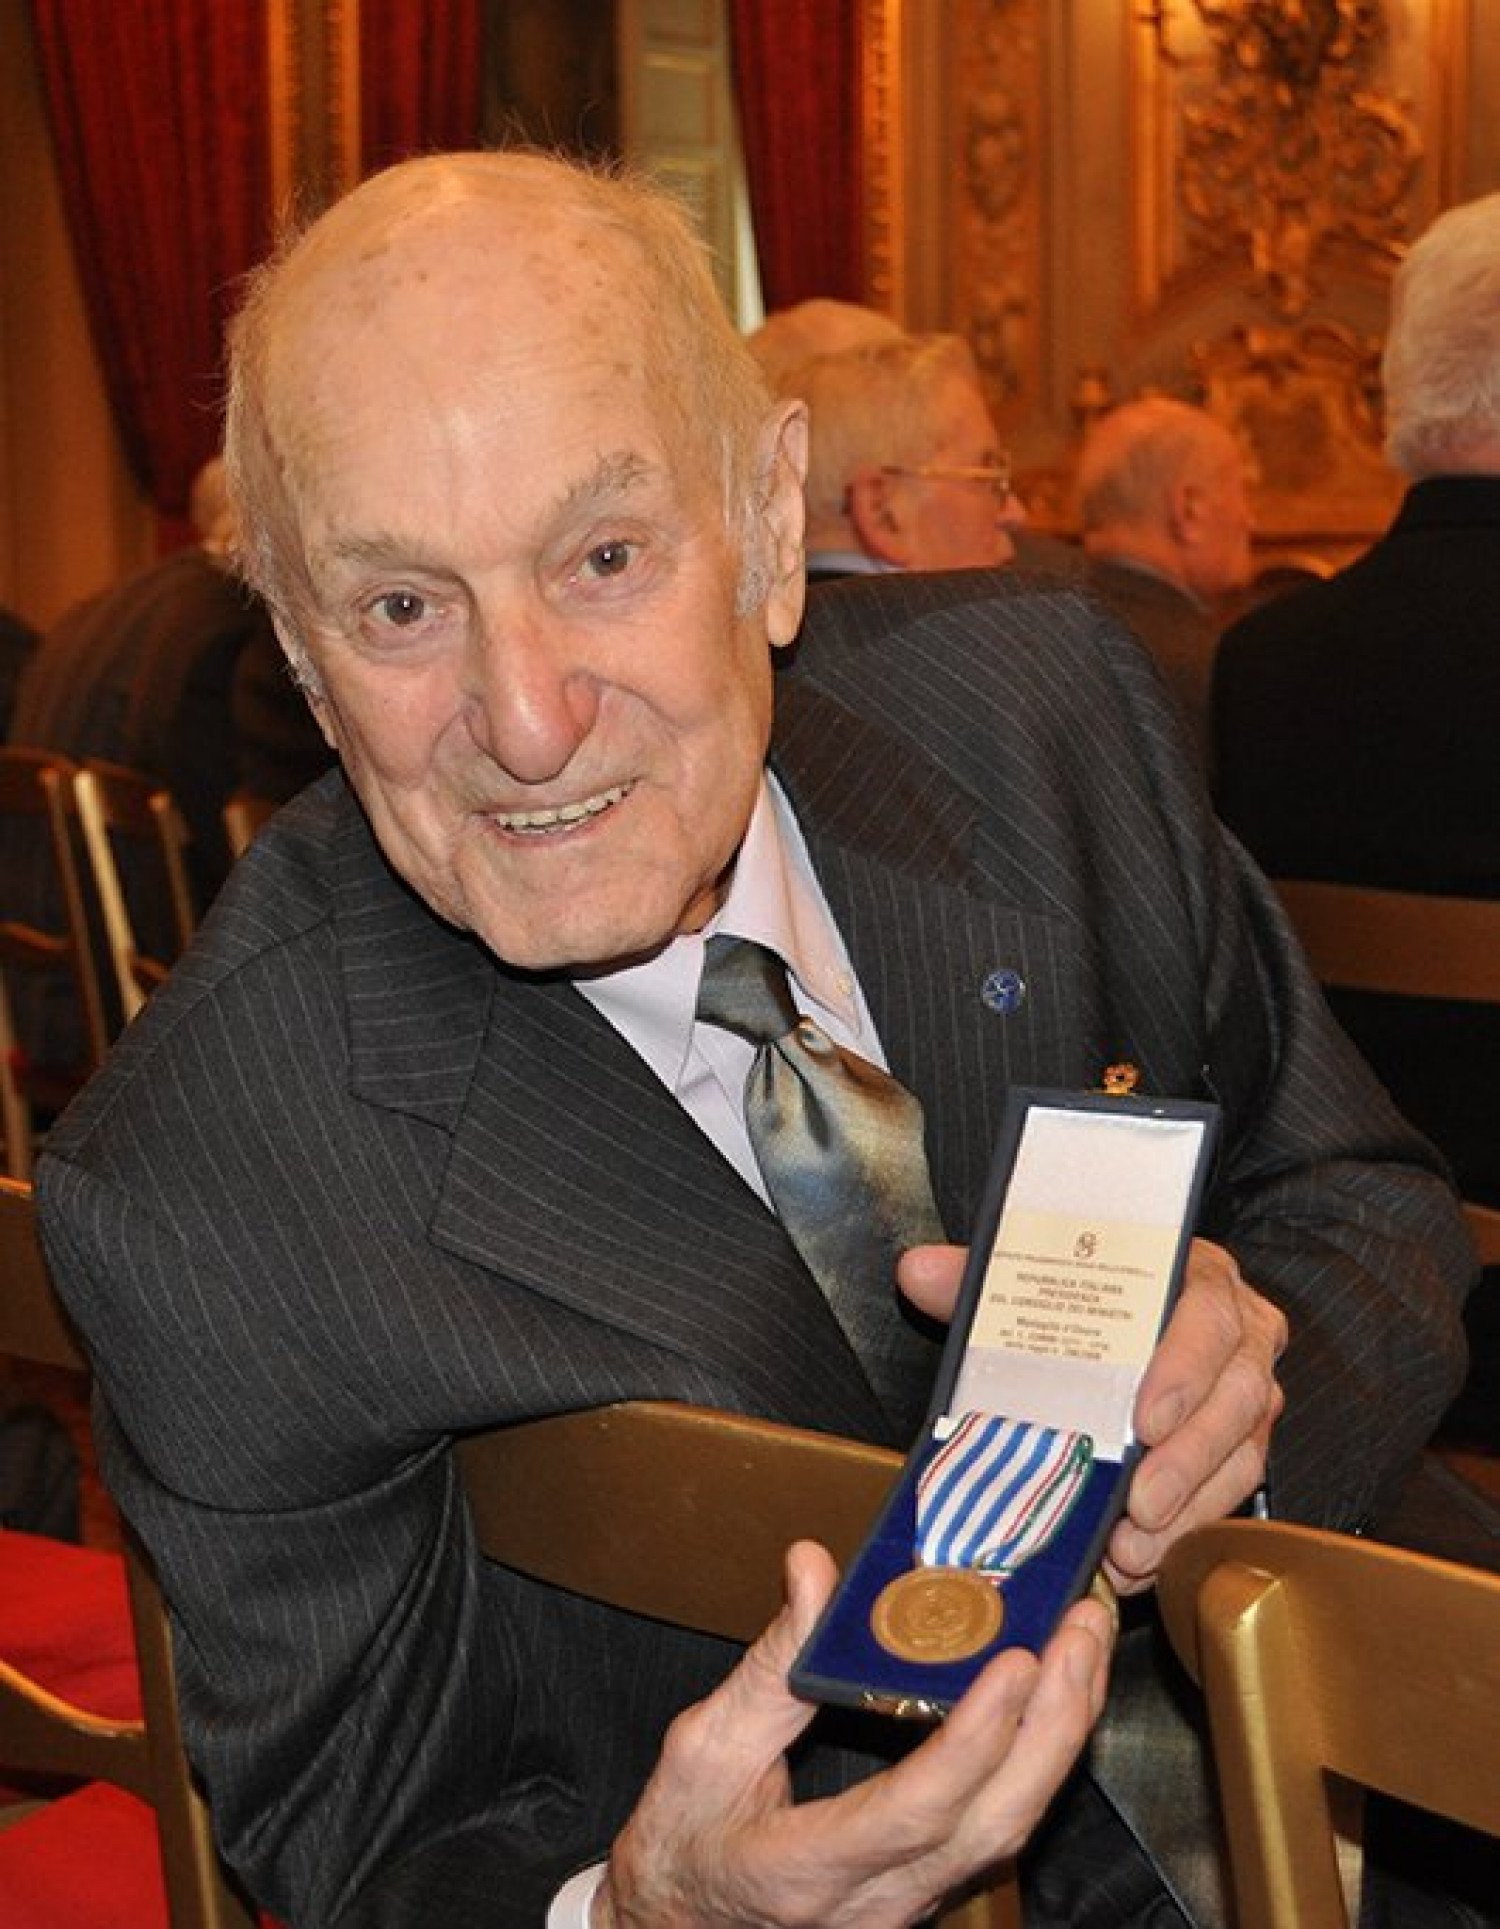 Elia Tomasi mit seiner Ehrenmedaille für italienische Militärinternierte 